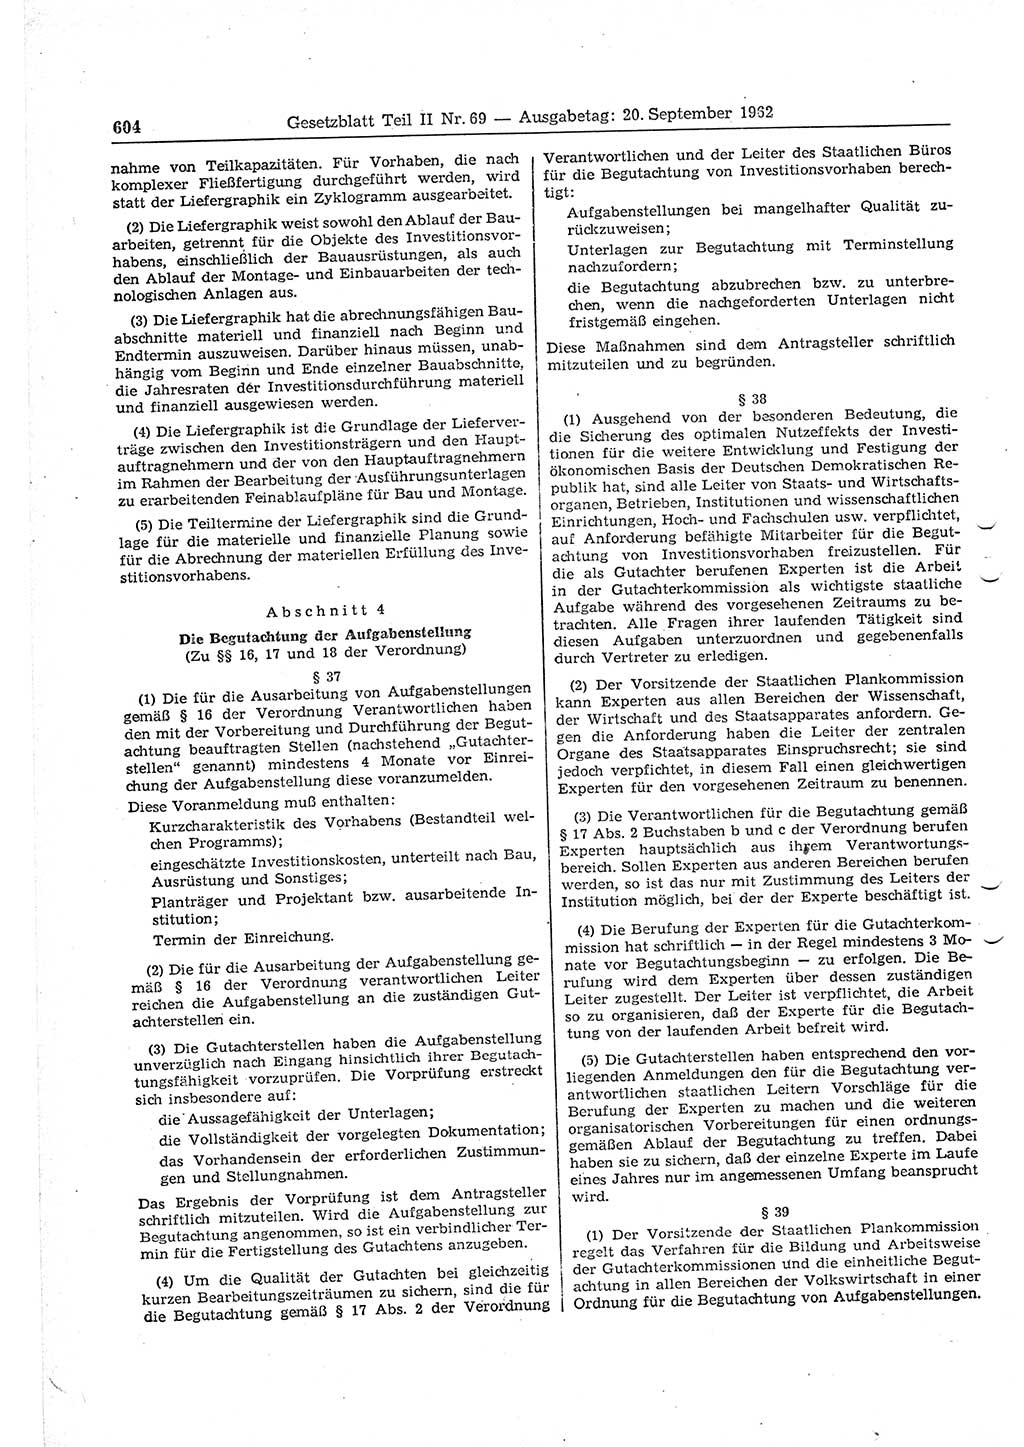 Gesetzblatt (GBl.) der Deutschen Demokratischen Republik (DDR) Teil ⅠⅠ 1962, Seite 604 (GBl. DDR ⅠⅠ 1962, S. 604)